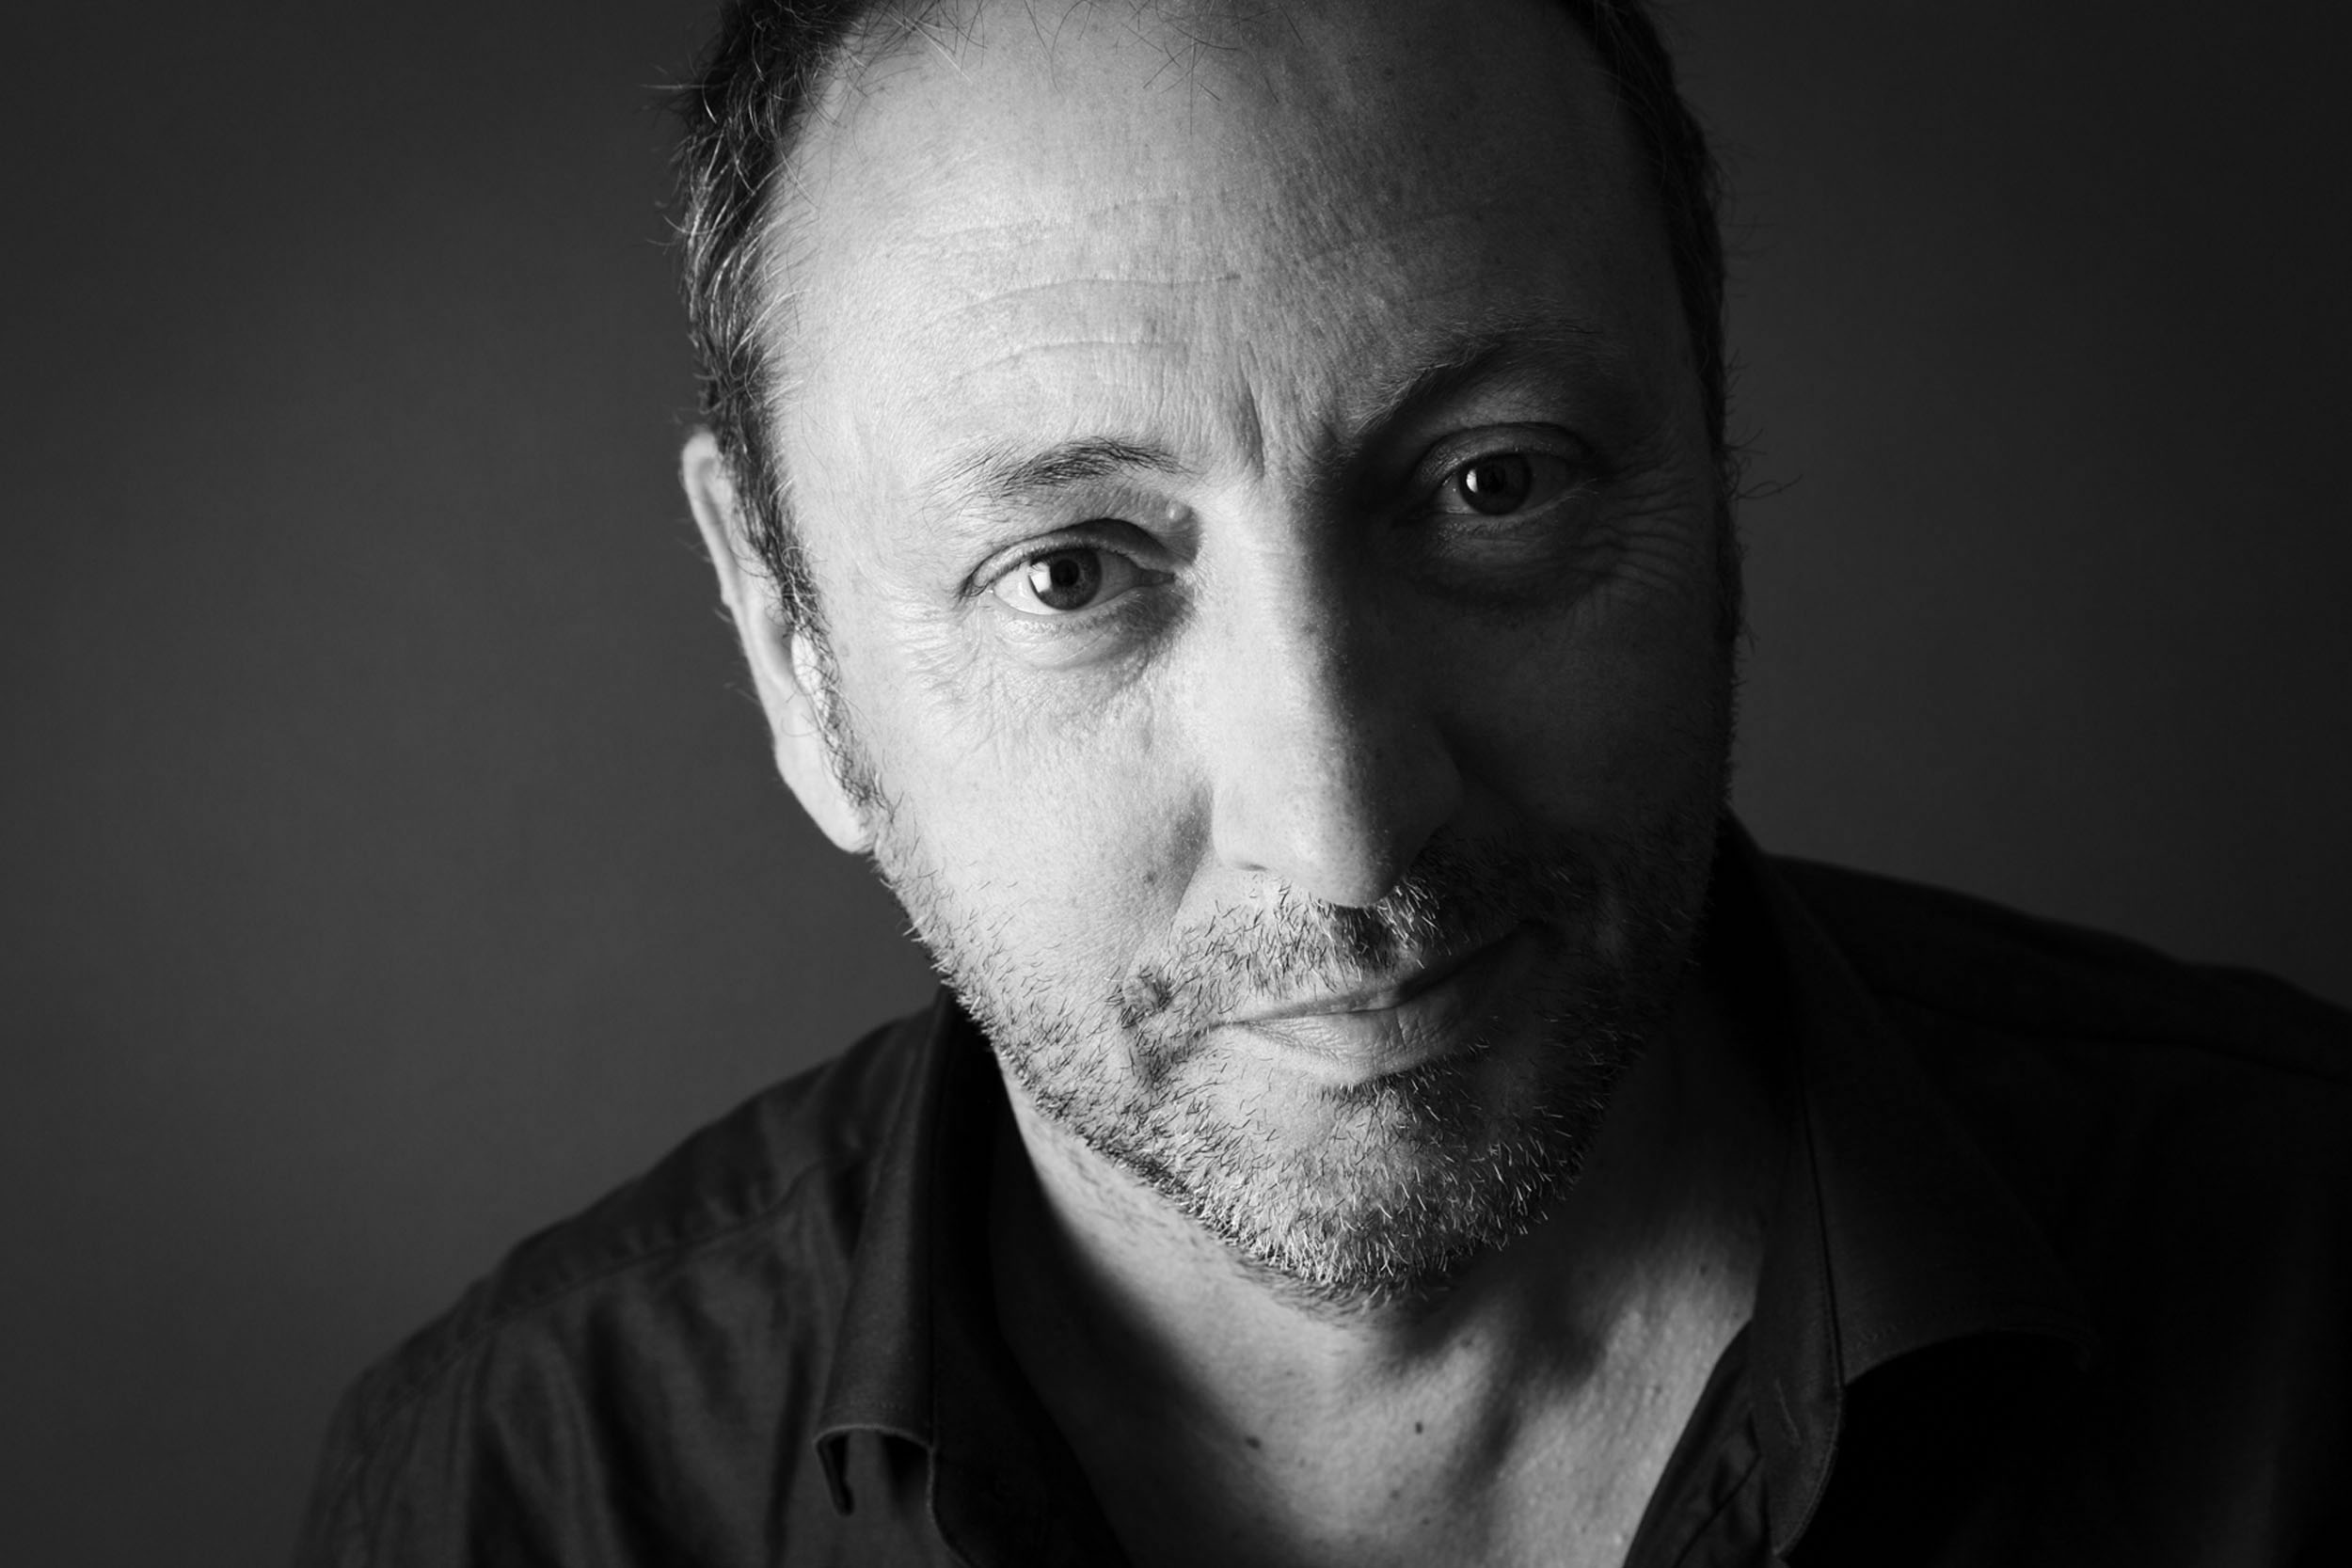 Portrait réseaux sociaux en noir et blanc du paysagiste Thierry Jourd'heuil. Photo de portrait réalisée en studio sur fond gris. Cadrage du portrait en gros plan.